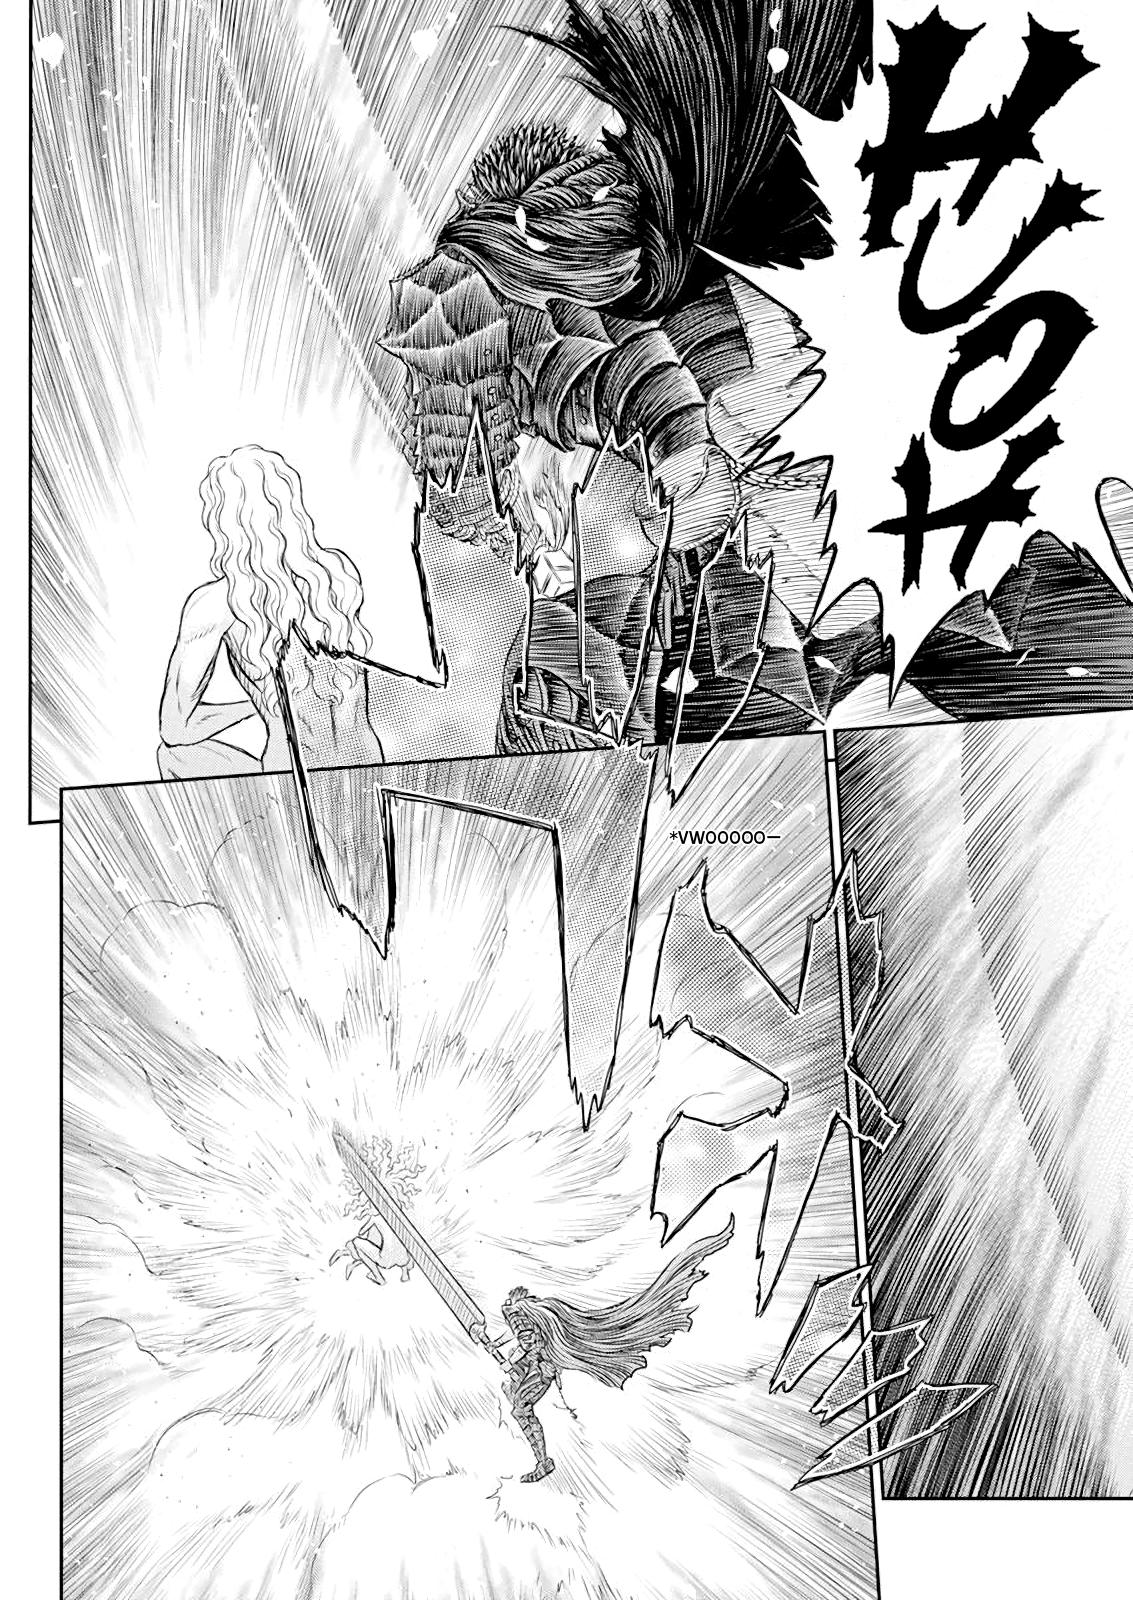 Berserk Manga Chapter 367 image 08